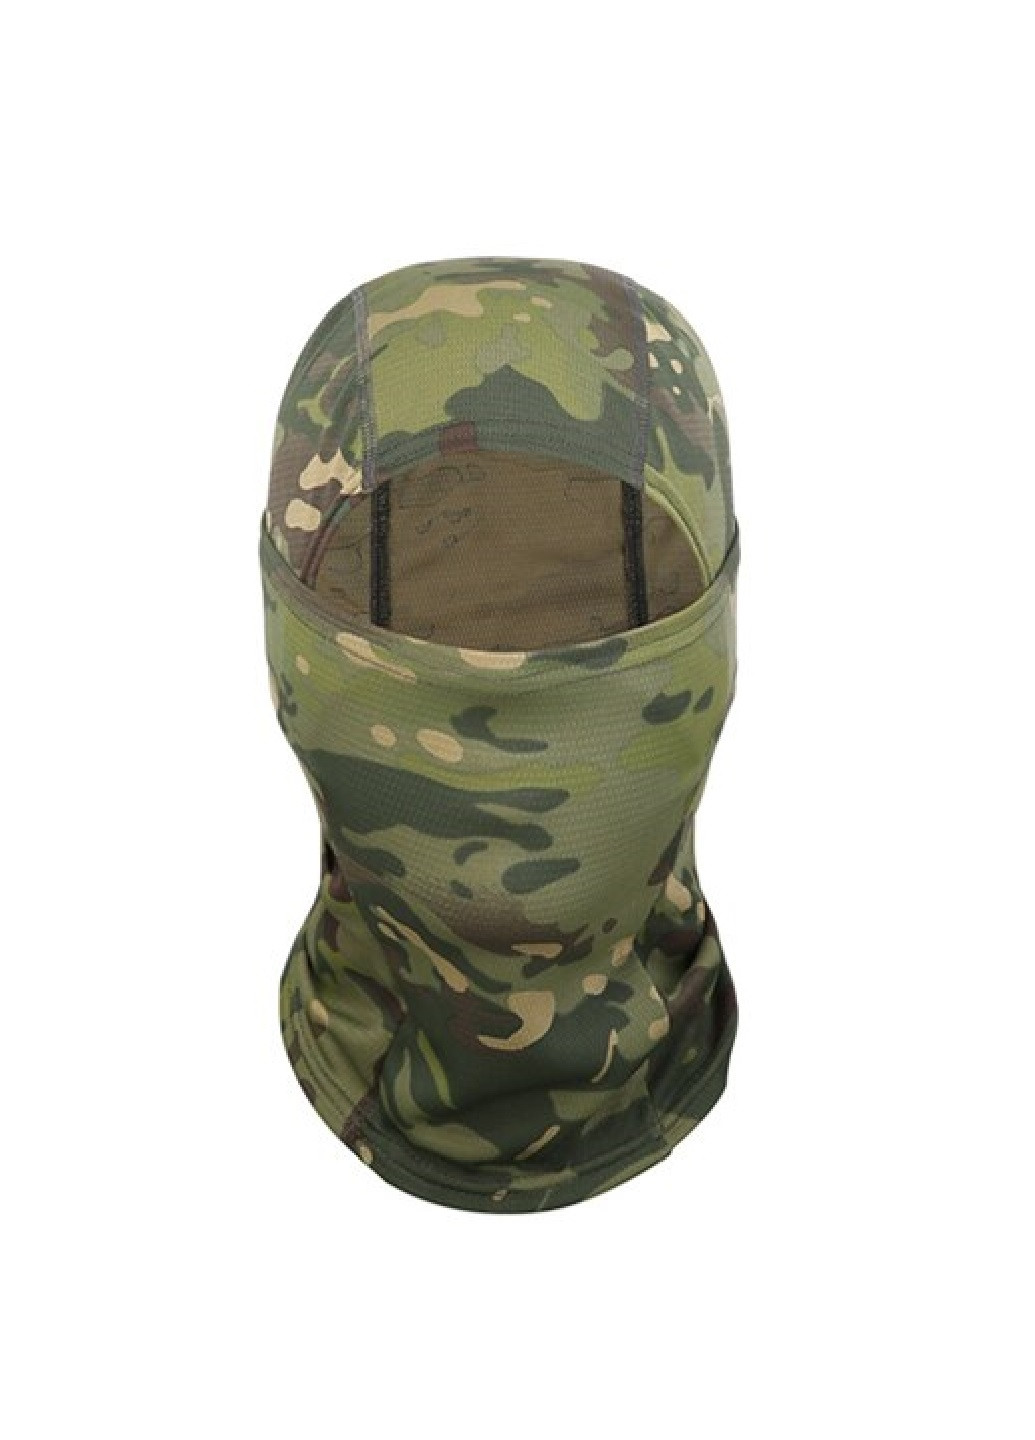 Unbranded балаклава маска подшлемник бафф тактическая из шелковой ткани окружность головы 48-58 см (56336-нов) камуфляжный зеленый полиэстер производство -